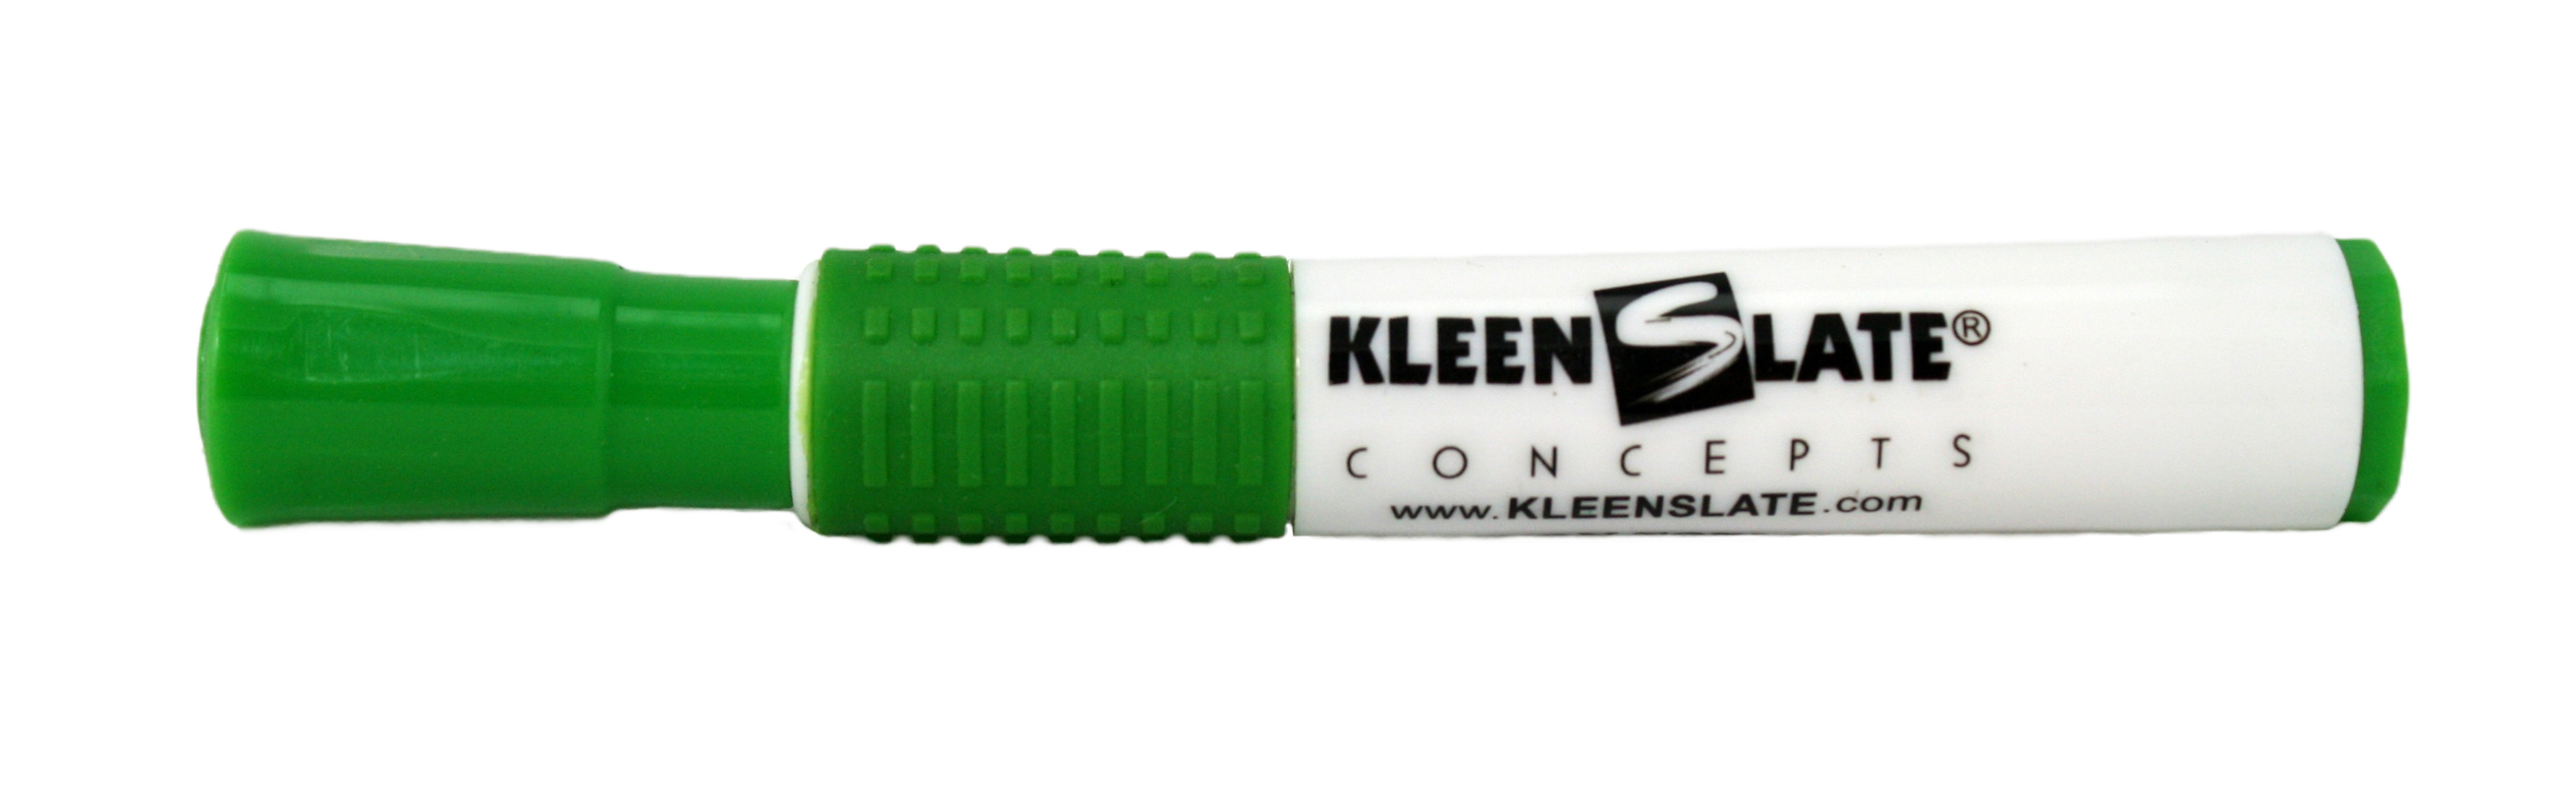 KleenSlate Eraser, Green